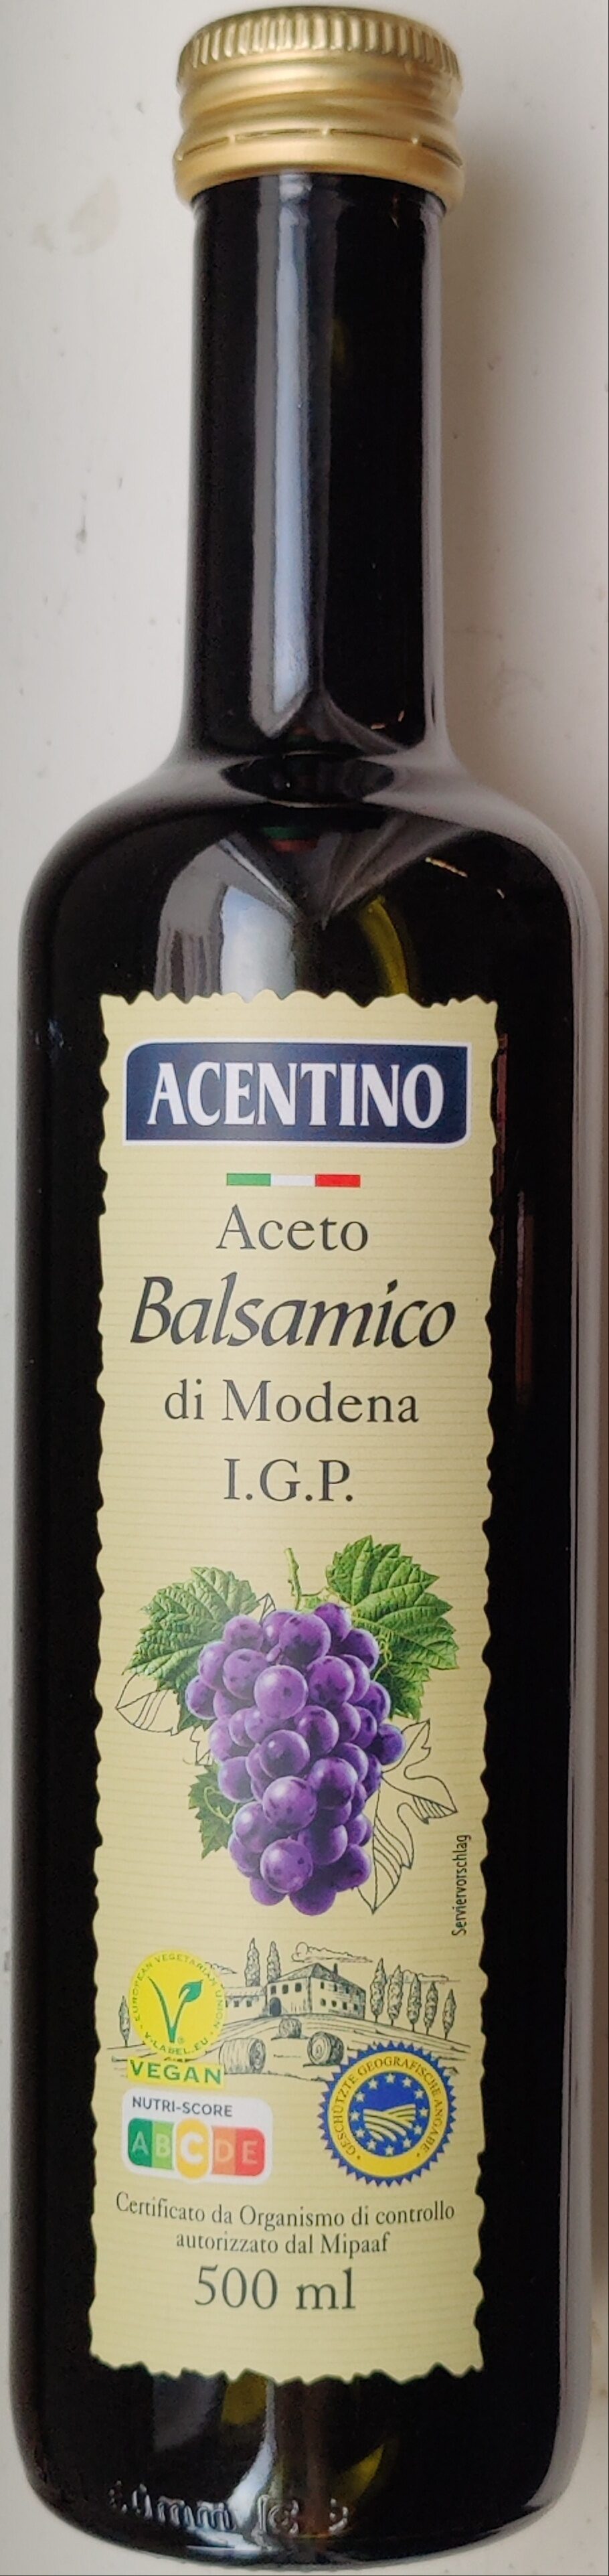 Aceto Balsamico di Modena - Produkt